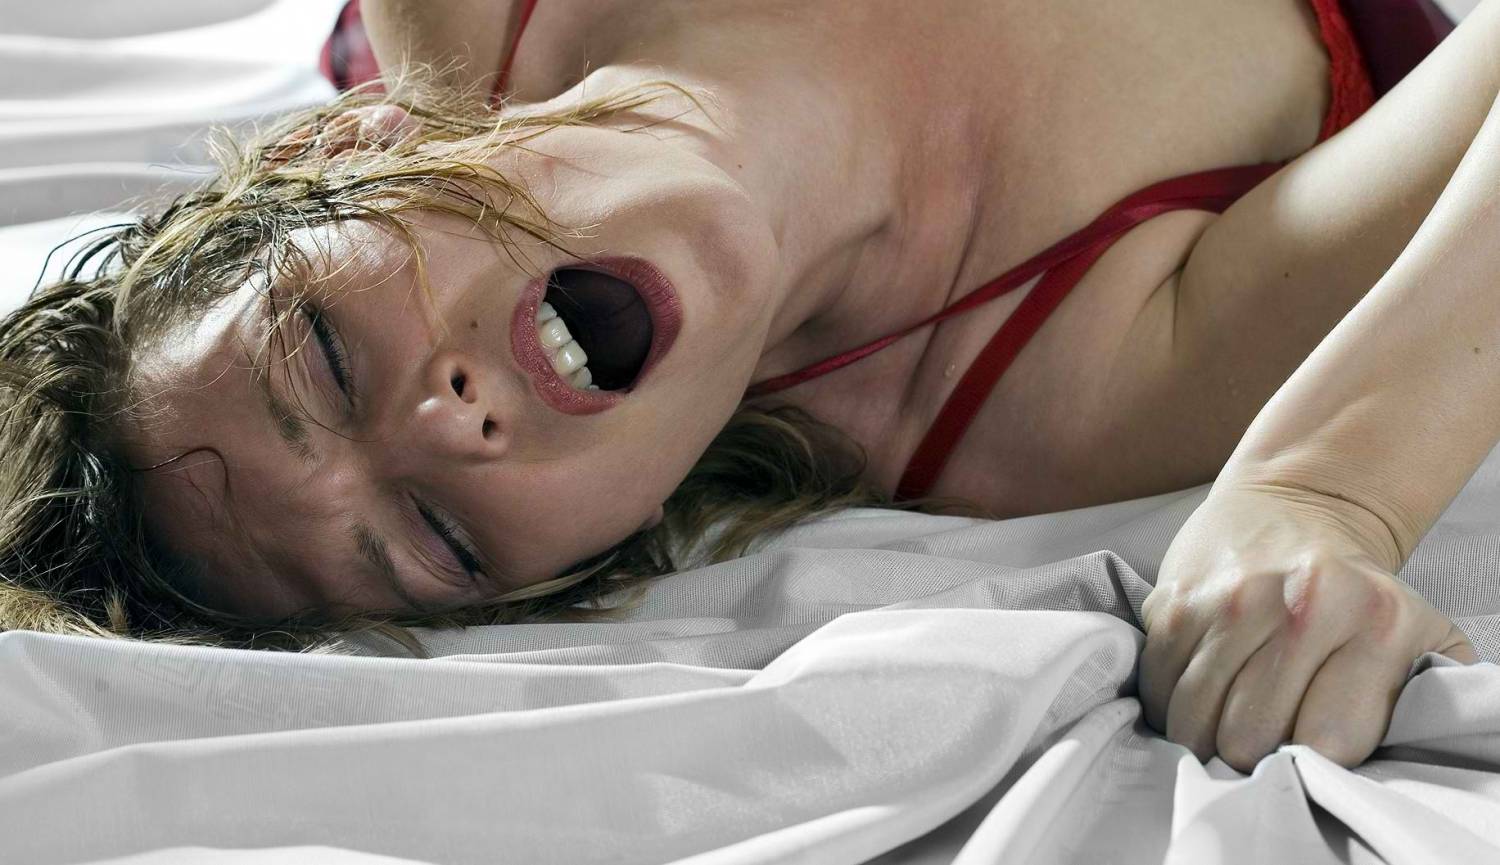 Получила мощный оргазм во время мастурбации